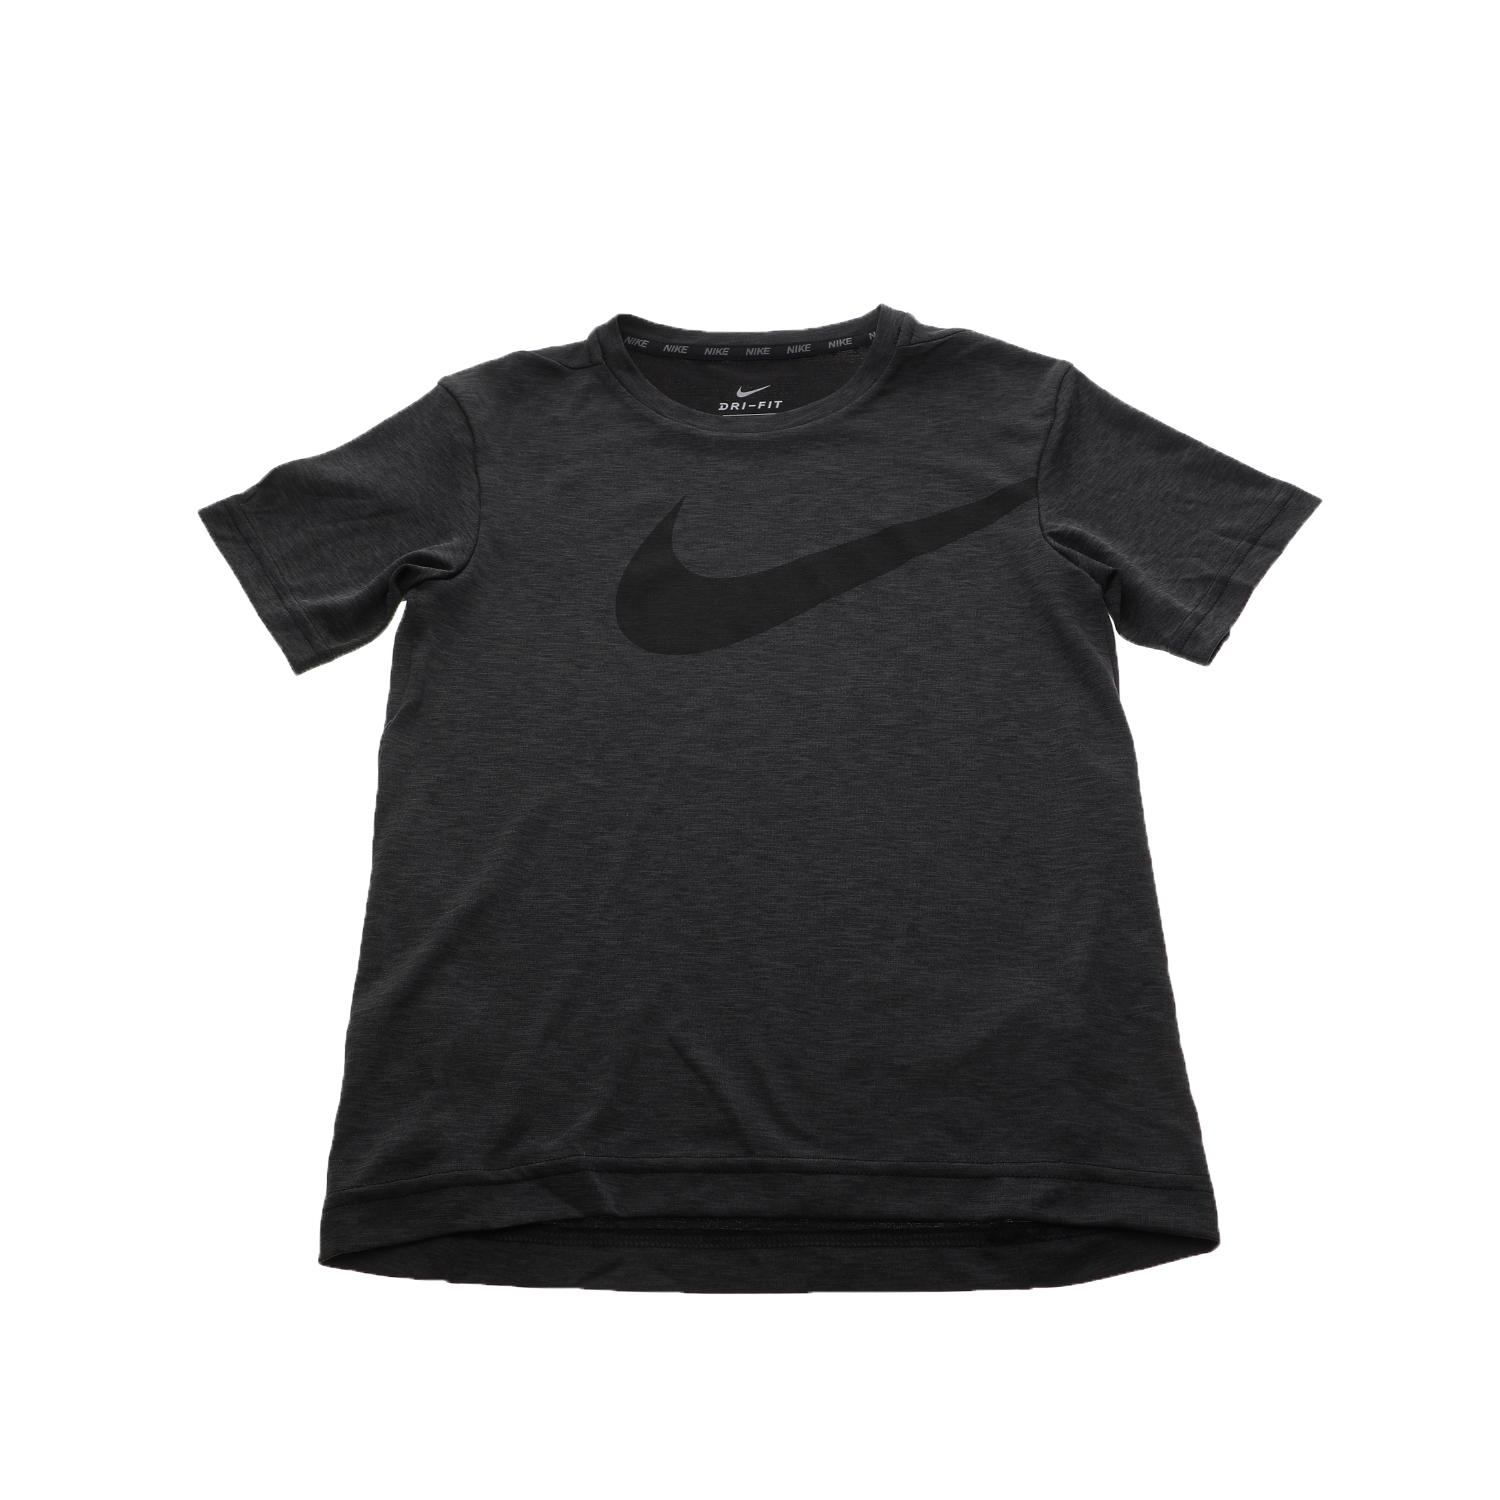 NIKE Αγορίστικη κοντομάνικη μπλούζα Nike BRTHE TOP SS HYPER GFX μαύρη